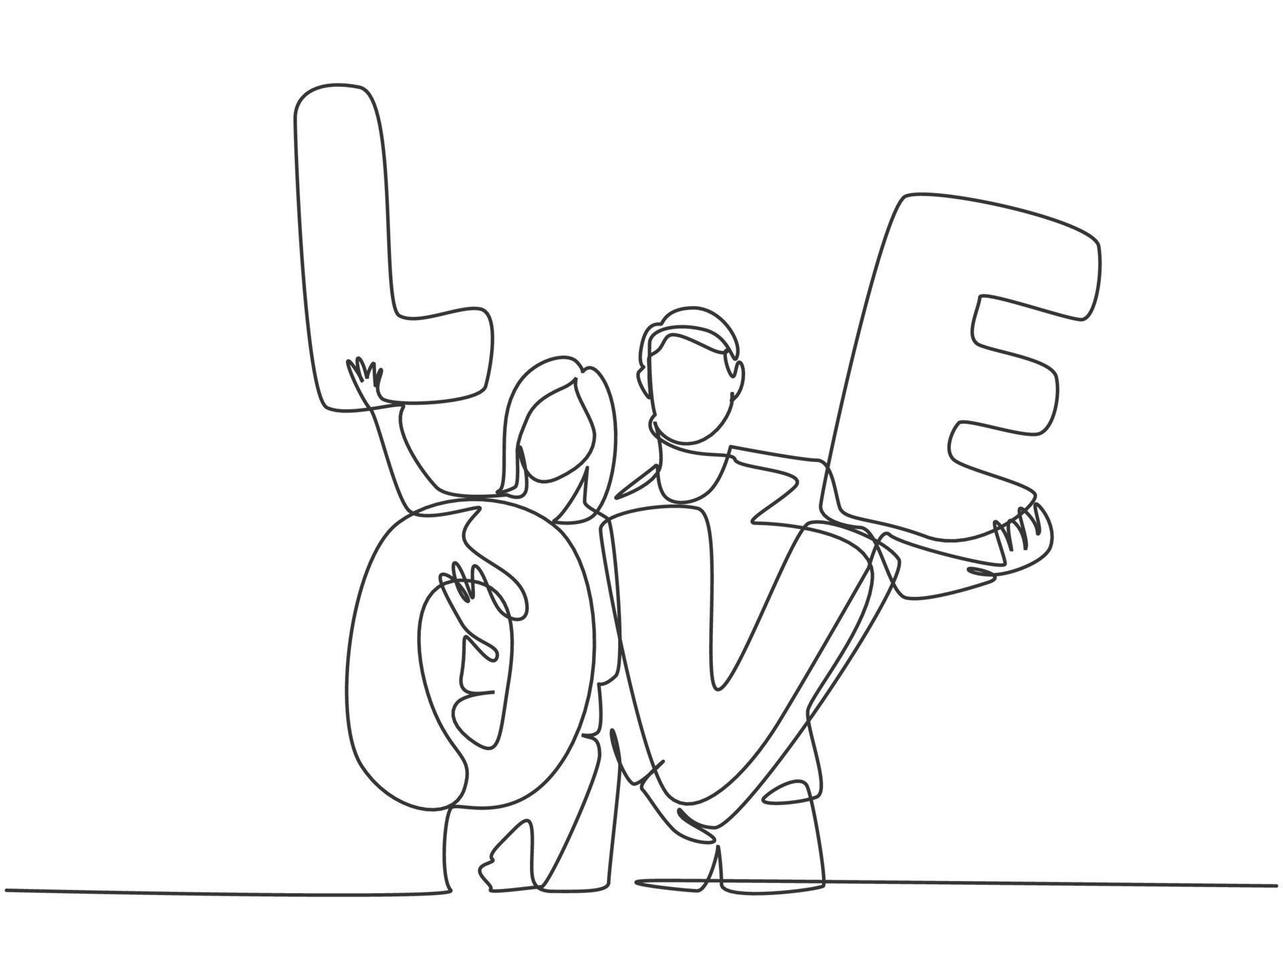 dibujo de una sola línea de la joven pareja feliz hombre y mujer sosteniendo un globo de carta de amor después del evento de propuesta de matrimonio. concepto de amor romántico dibujo de línea continua diseño gráfico ilustración vectorial vector